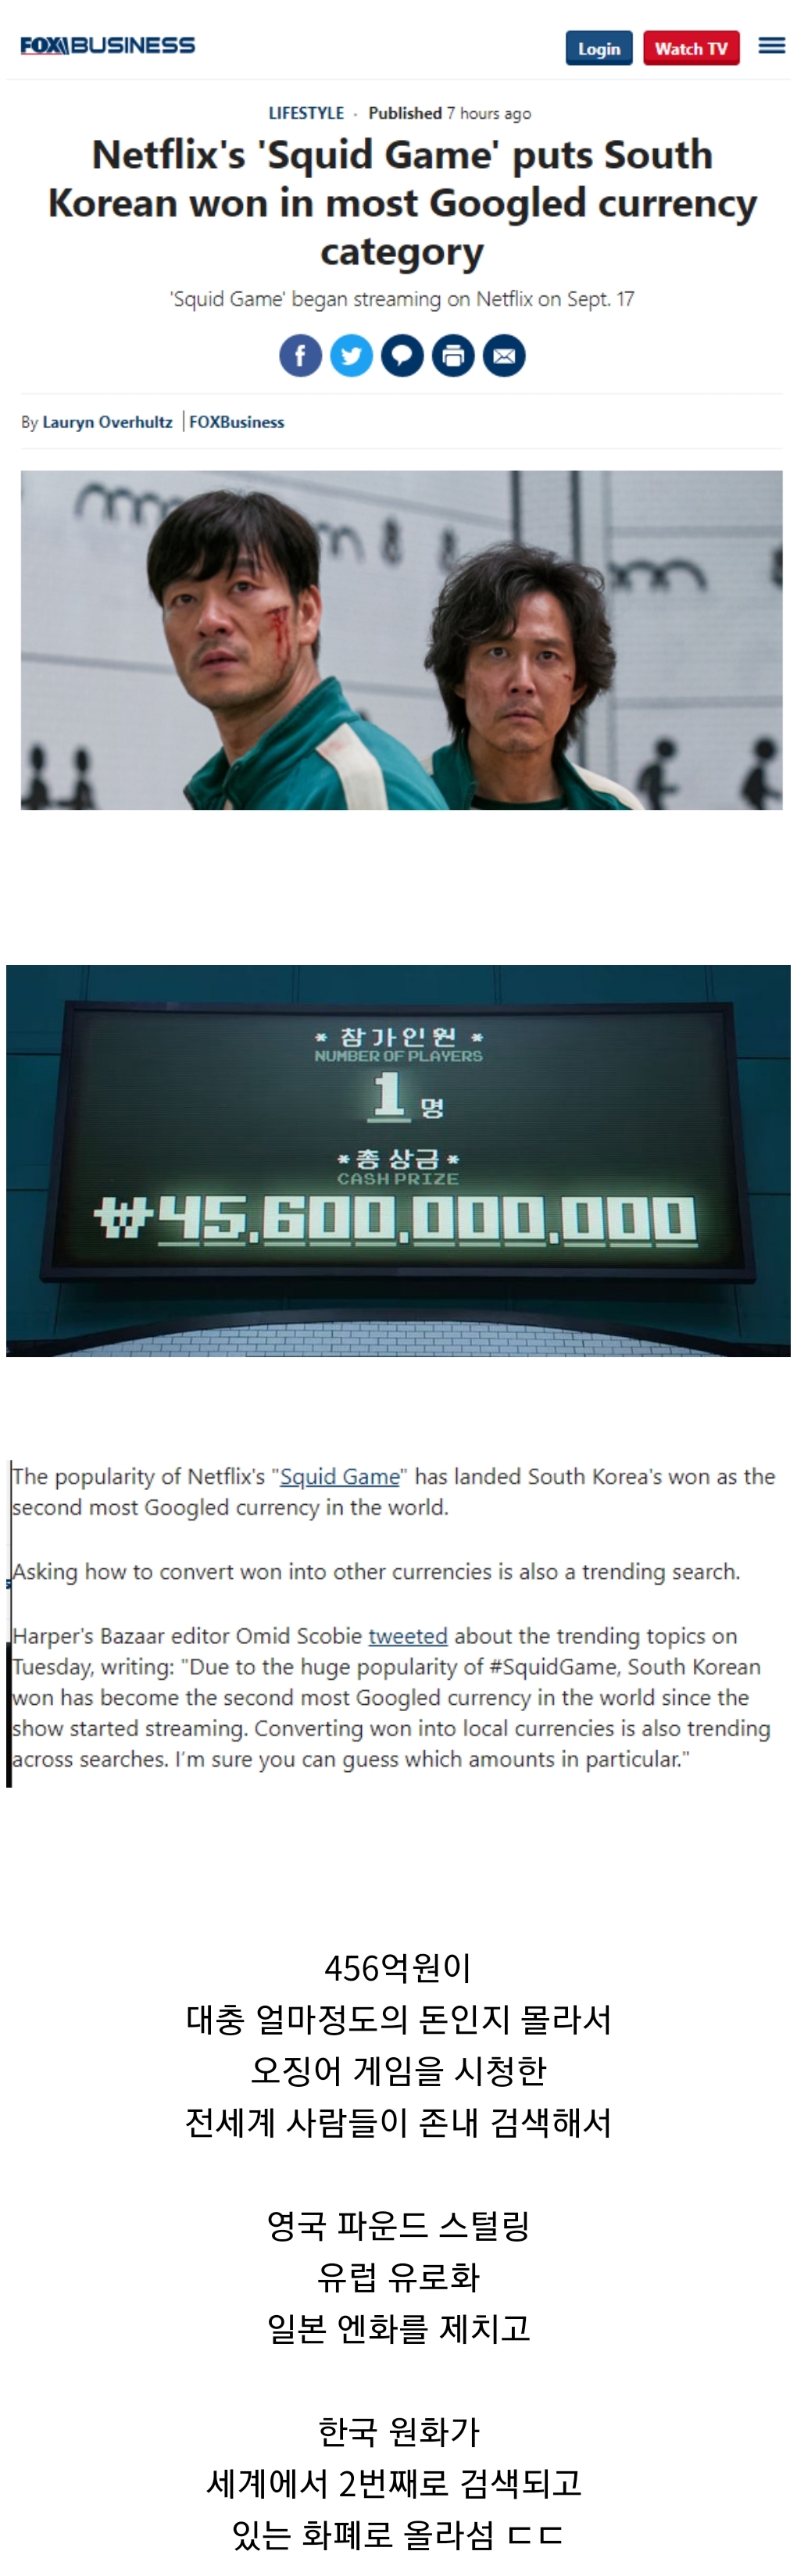 한국원화, 세계에서 2번째로 검색되는 화폐로 등극.jpg